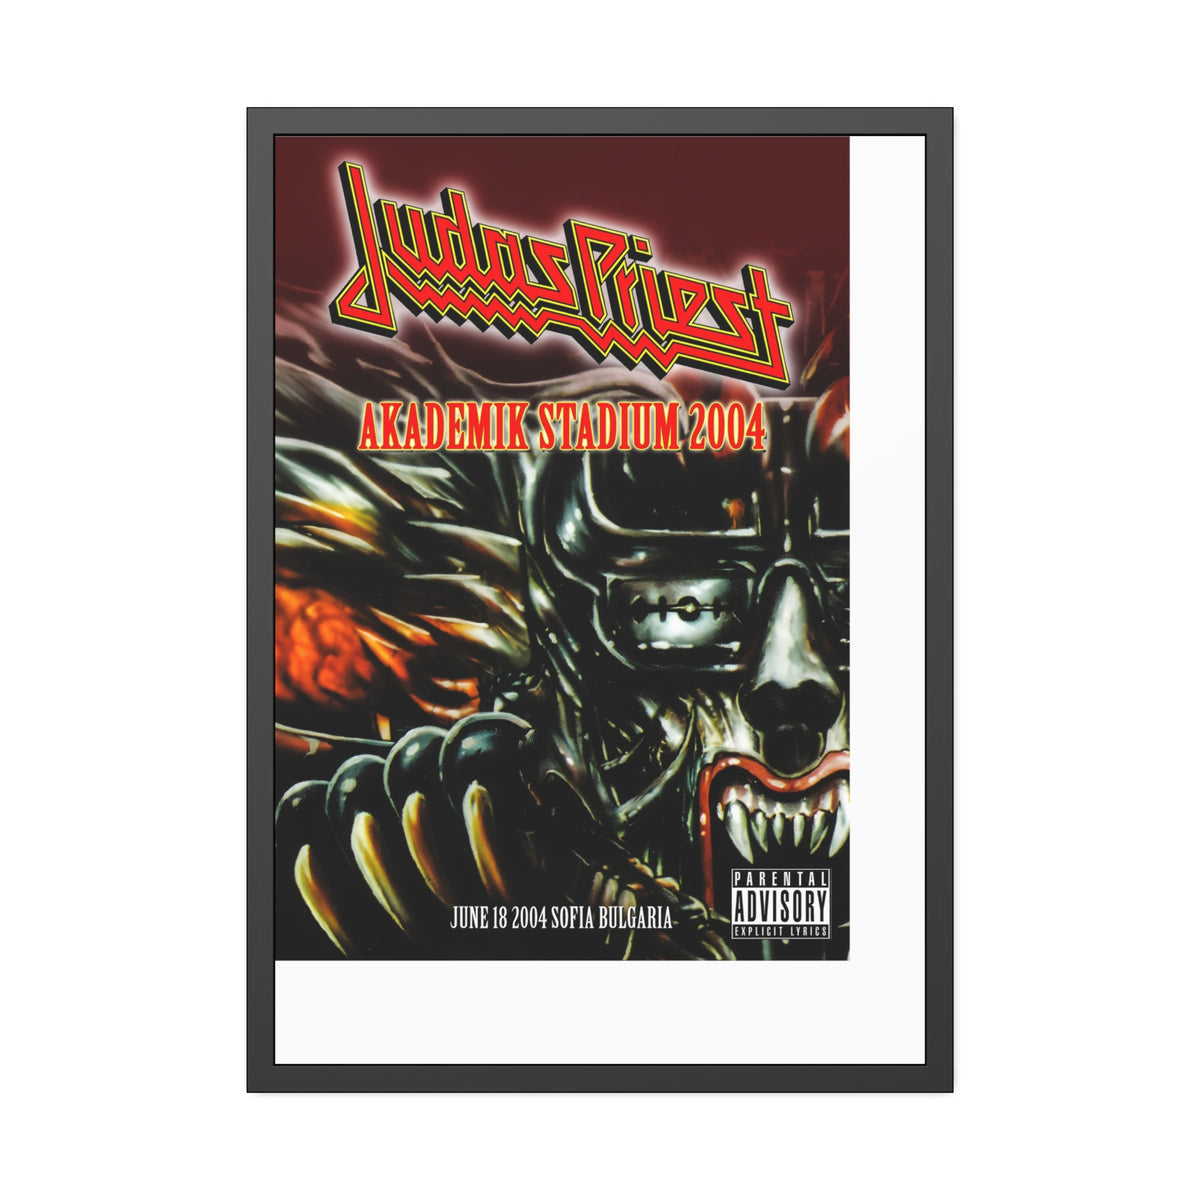 Judas Priest Concert Poster V